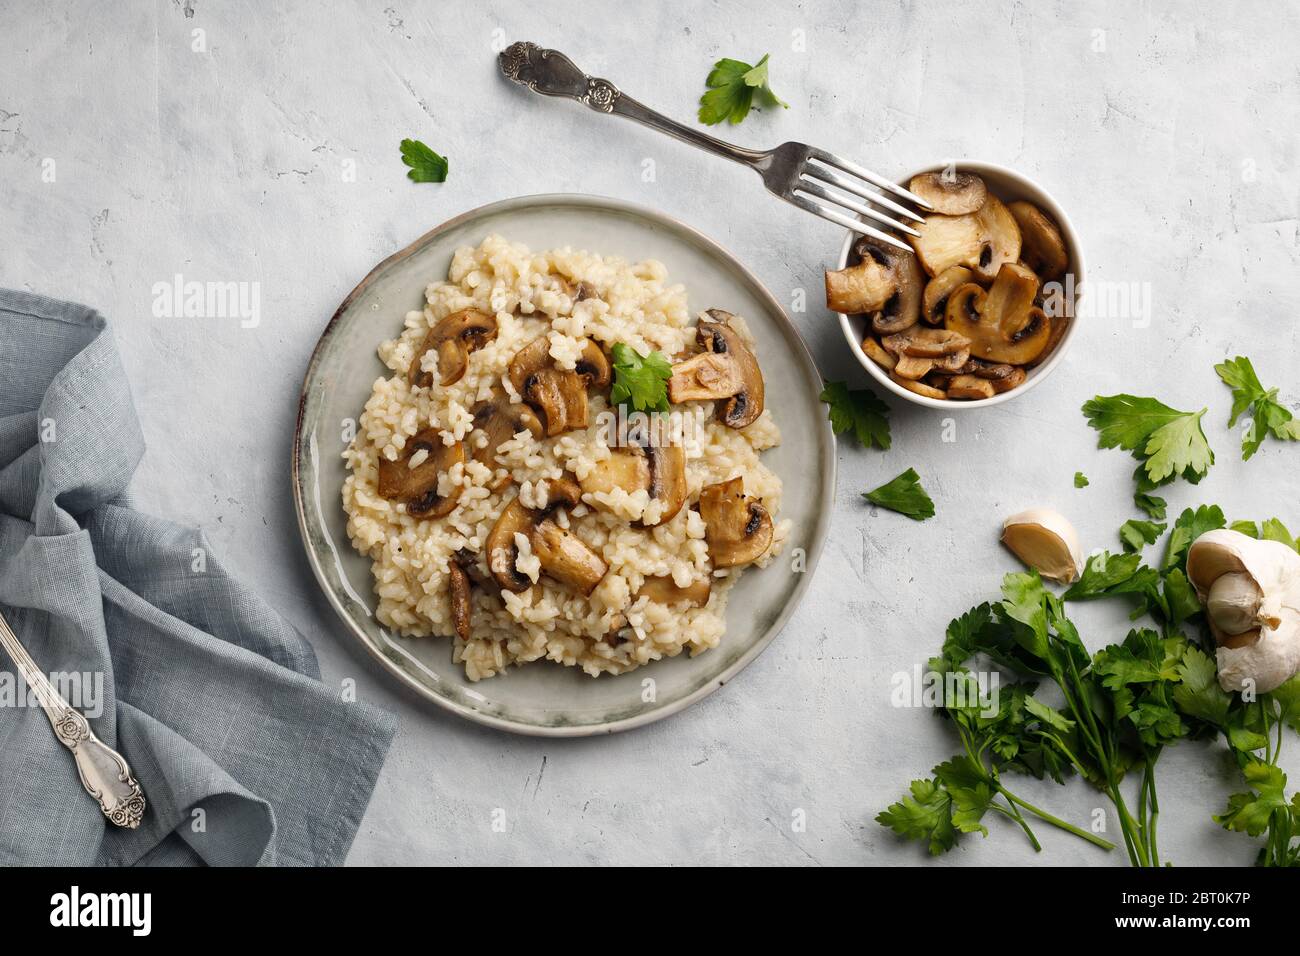 Ein Gericht der italienischen Küche - Risotto aus Reis und Pilzen. Draufsicht. Flaches Lay. Heller Hintergrund. Stockfoto